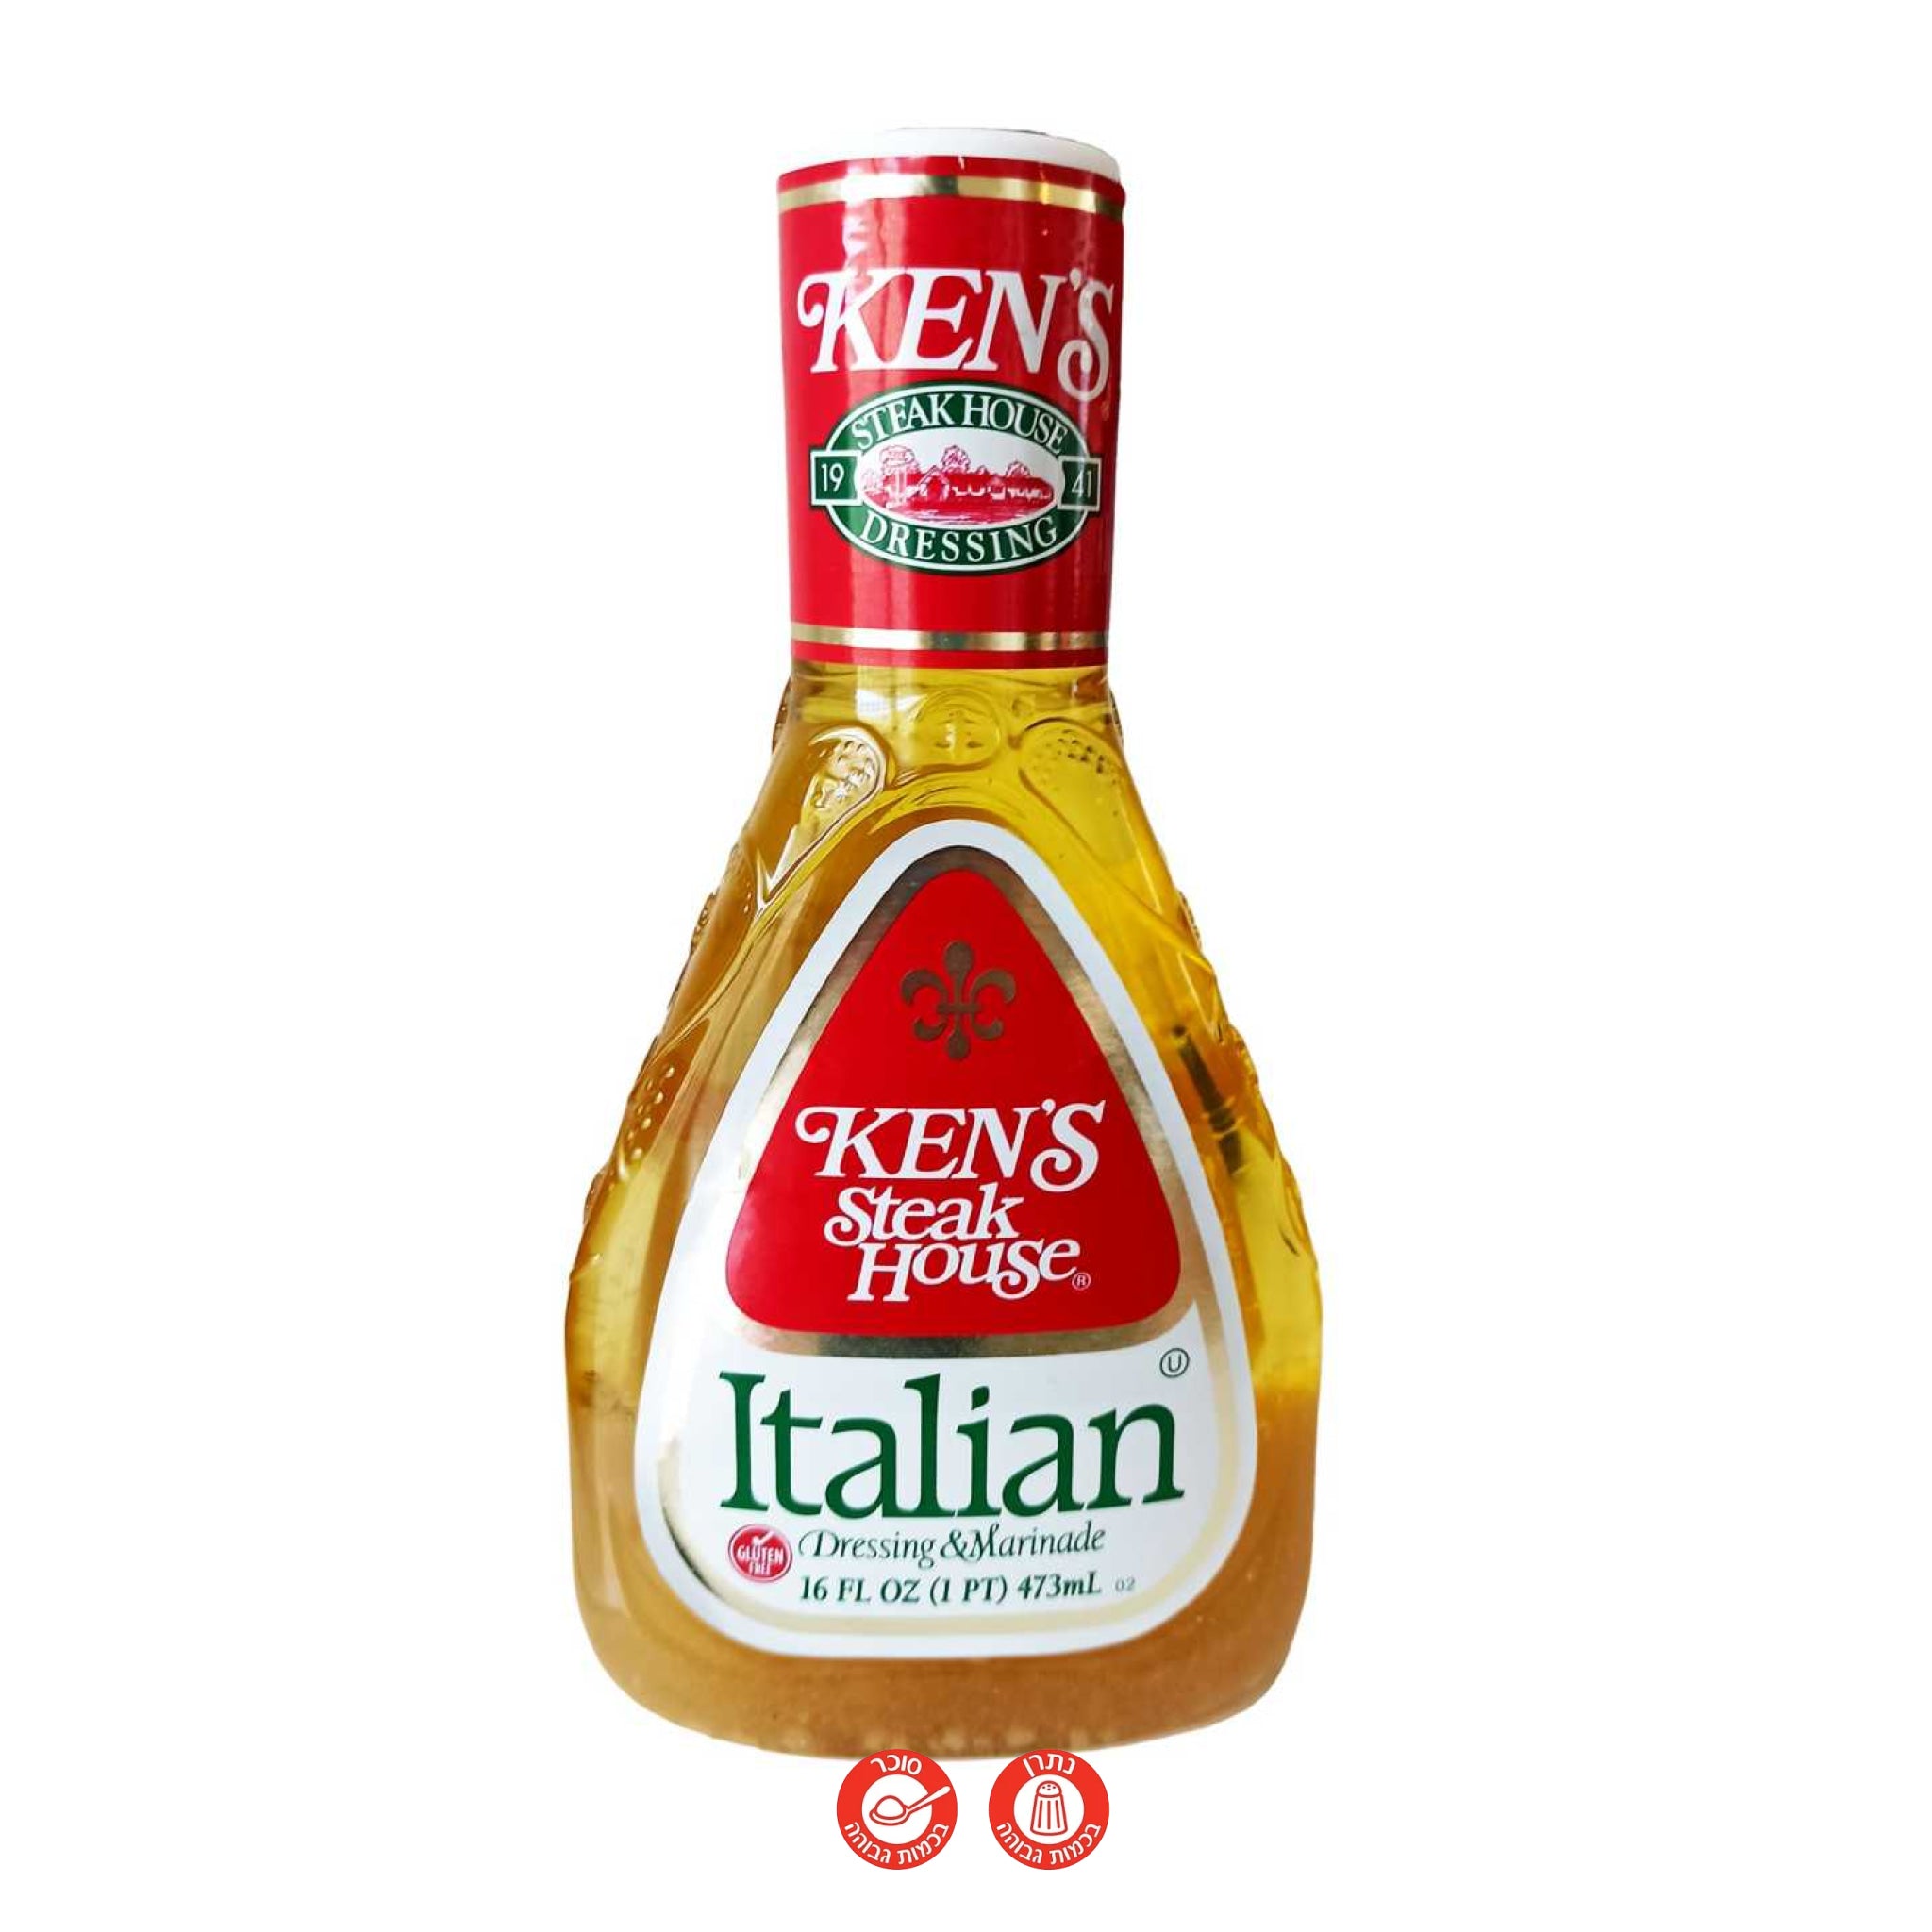 Ken's Italian - רוטב איטלקי - טעימים